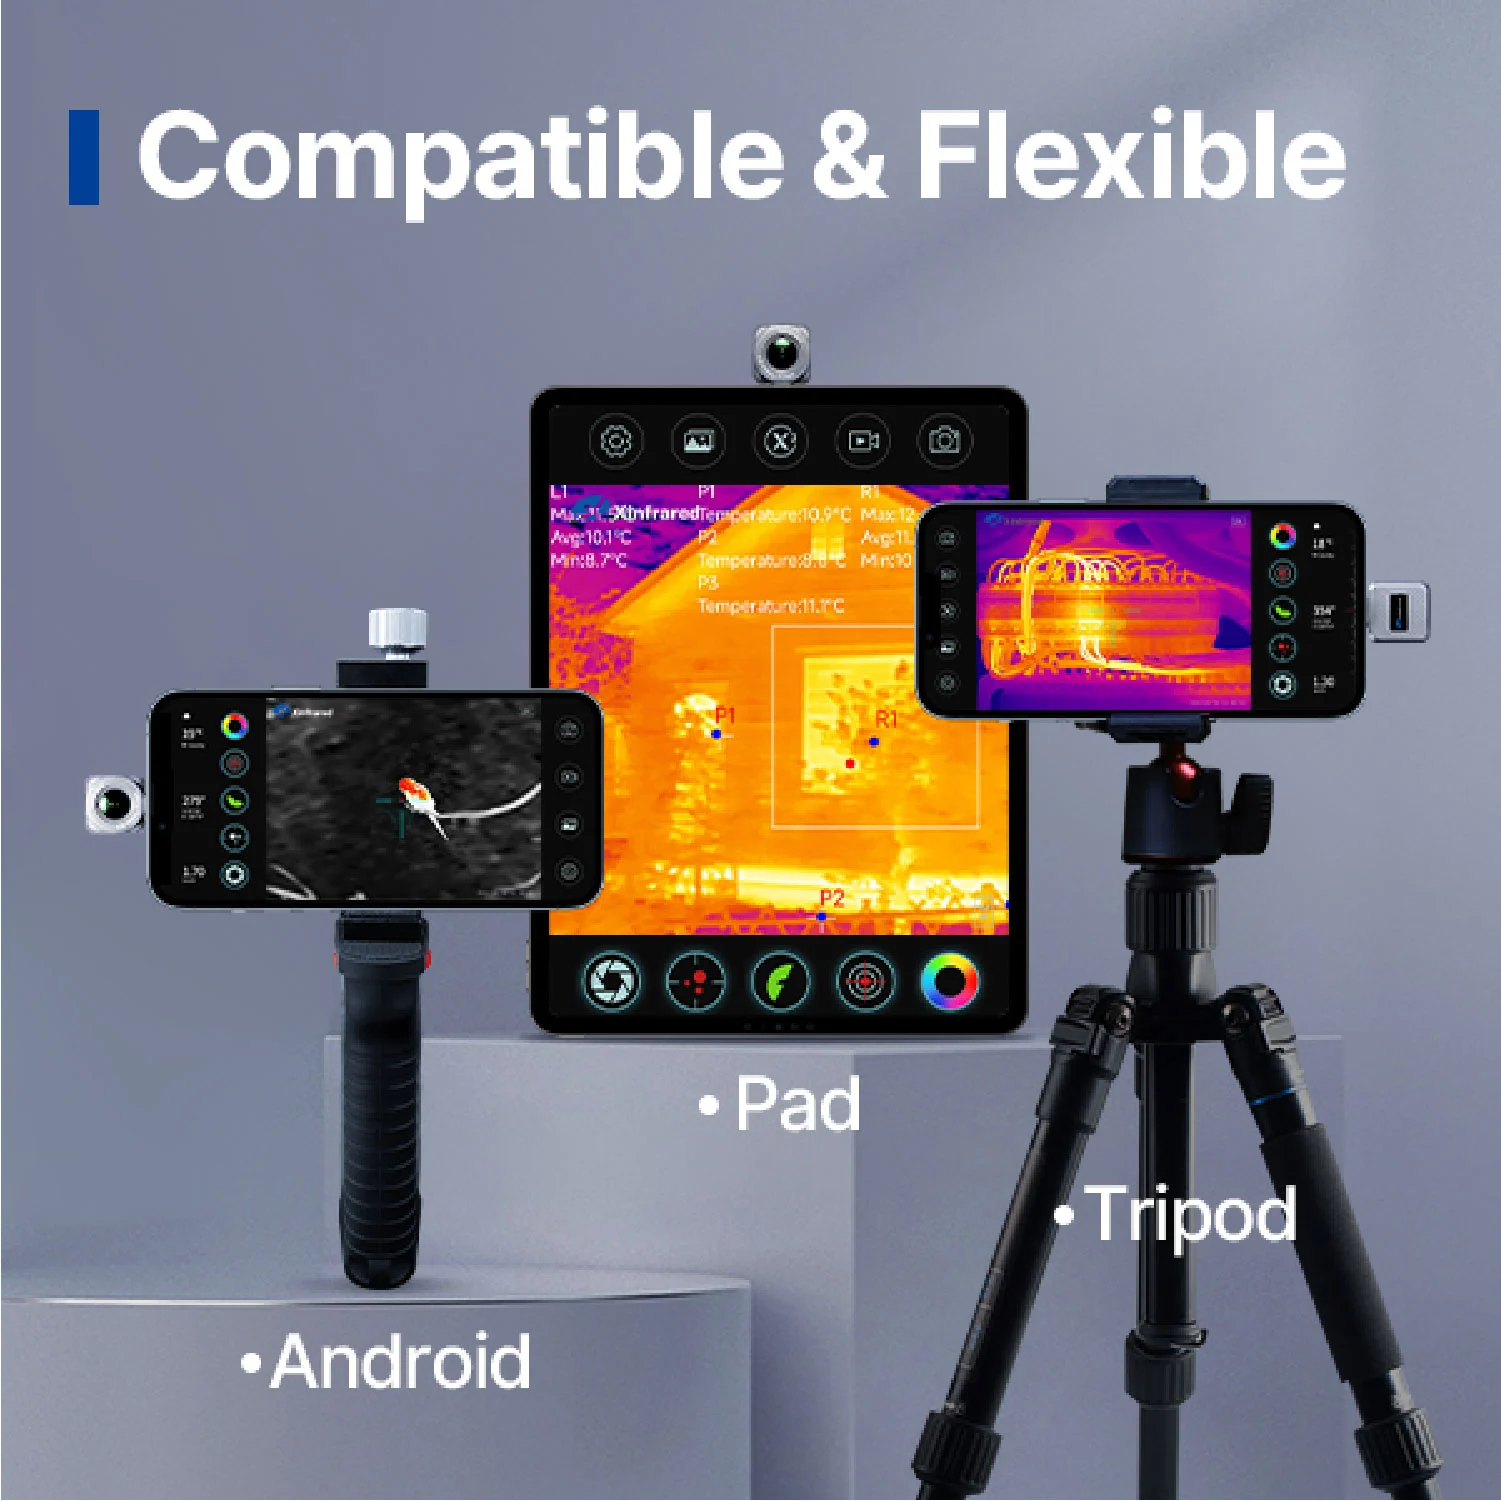 Compatible & Flexible